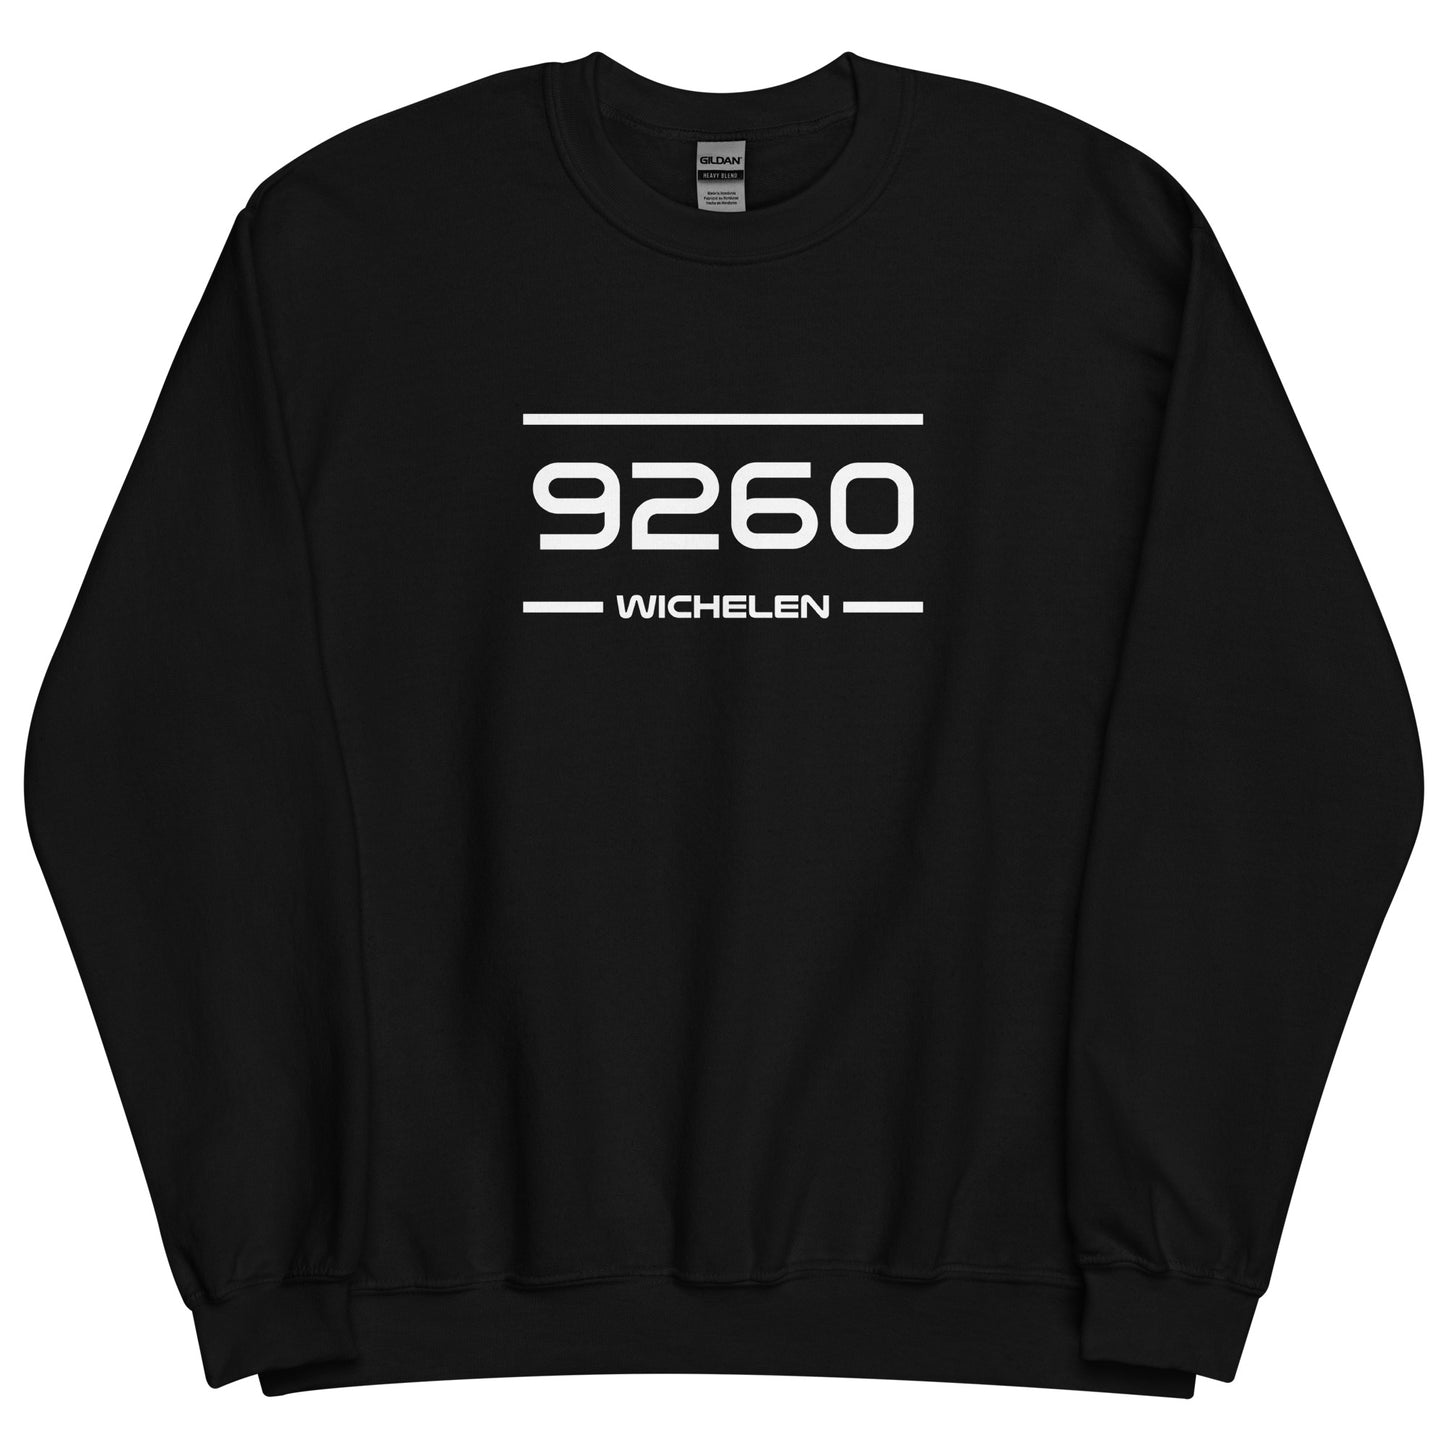 Sweater - 9260 - Wichelen (M/V)